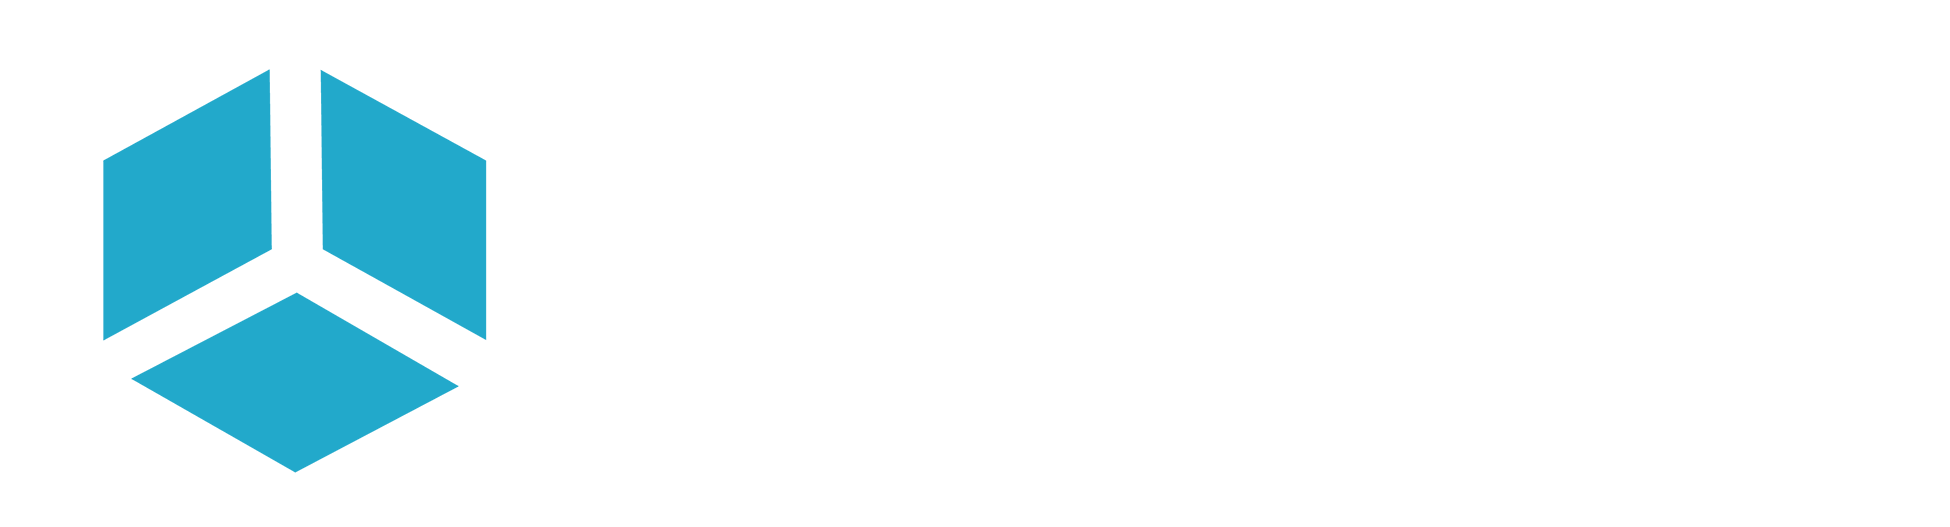 WallPen - Interior Drawing Tool